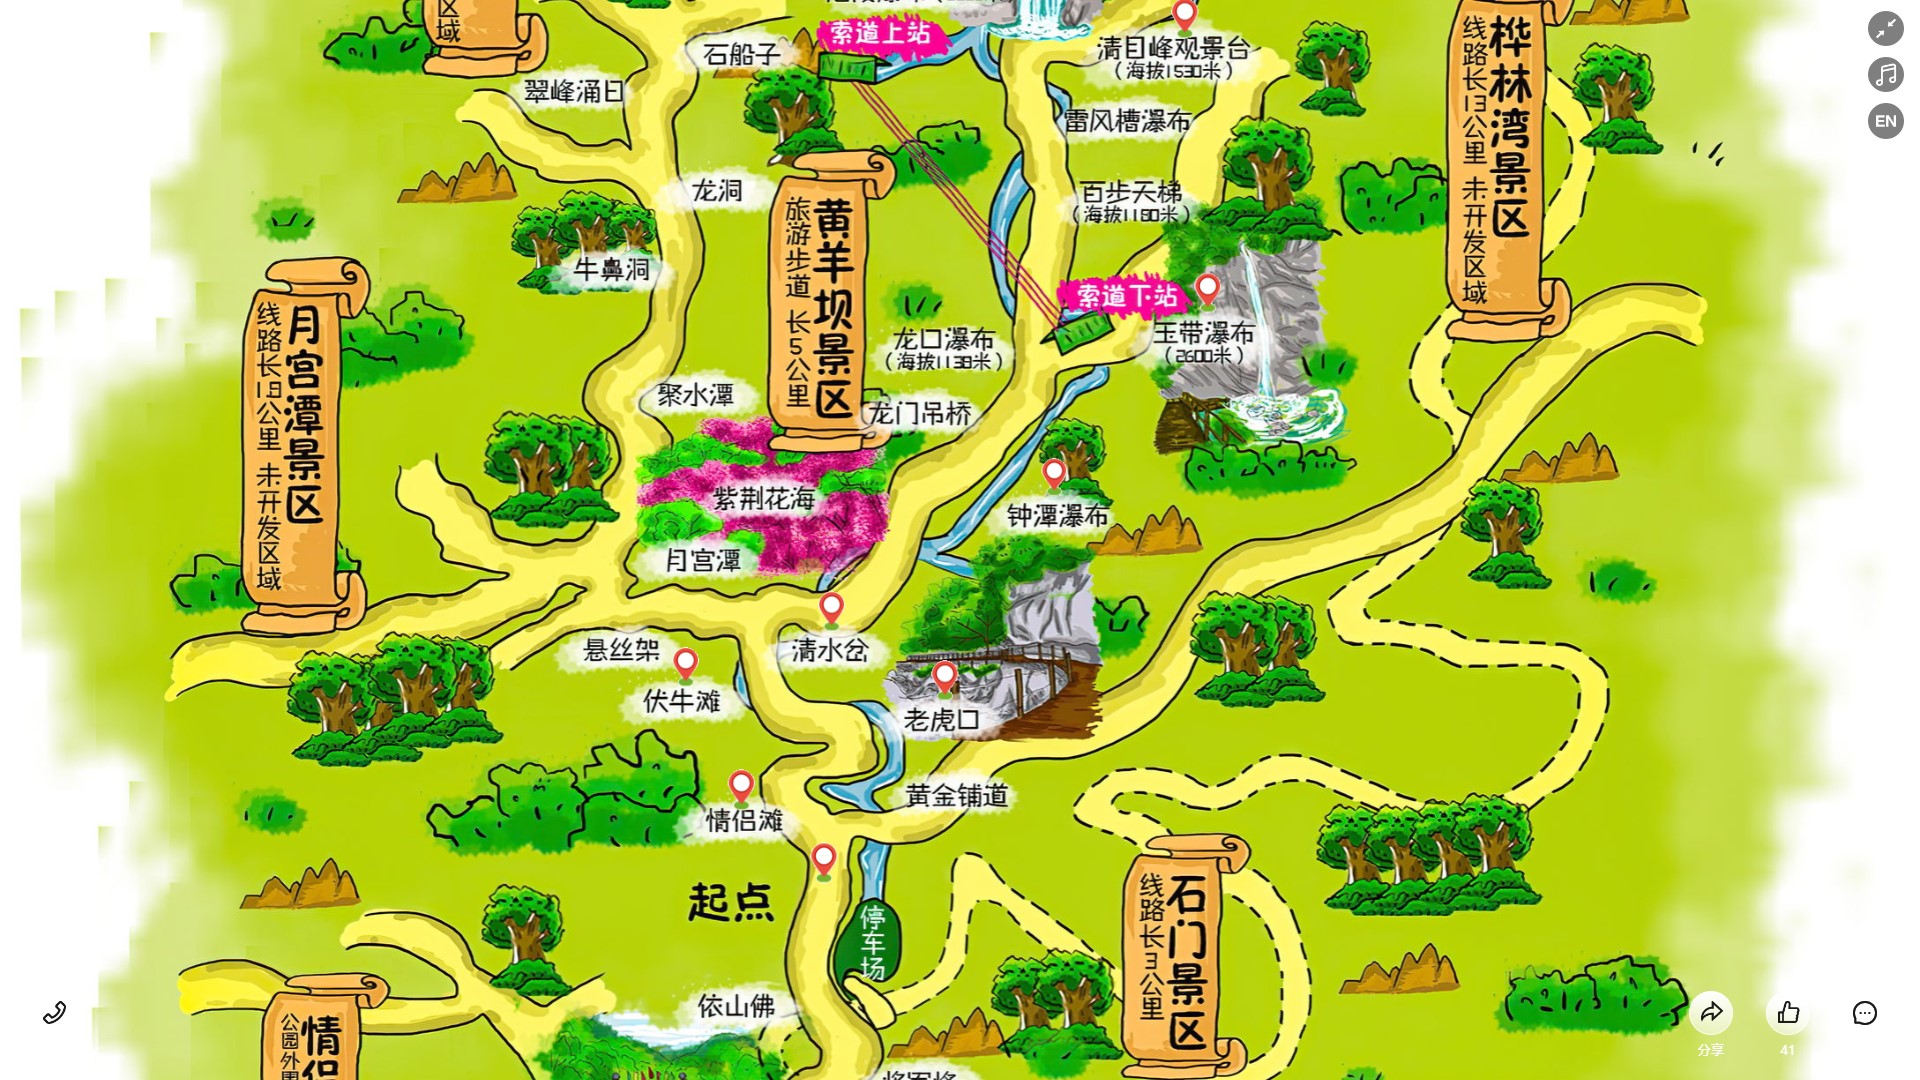 寿县景区导览系统